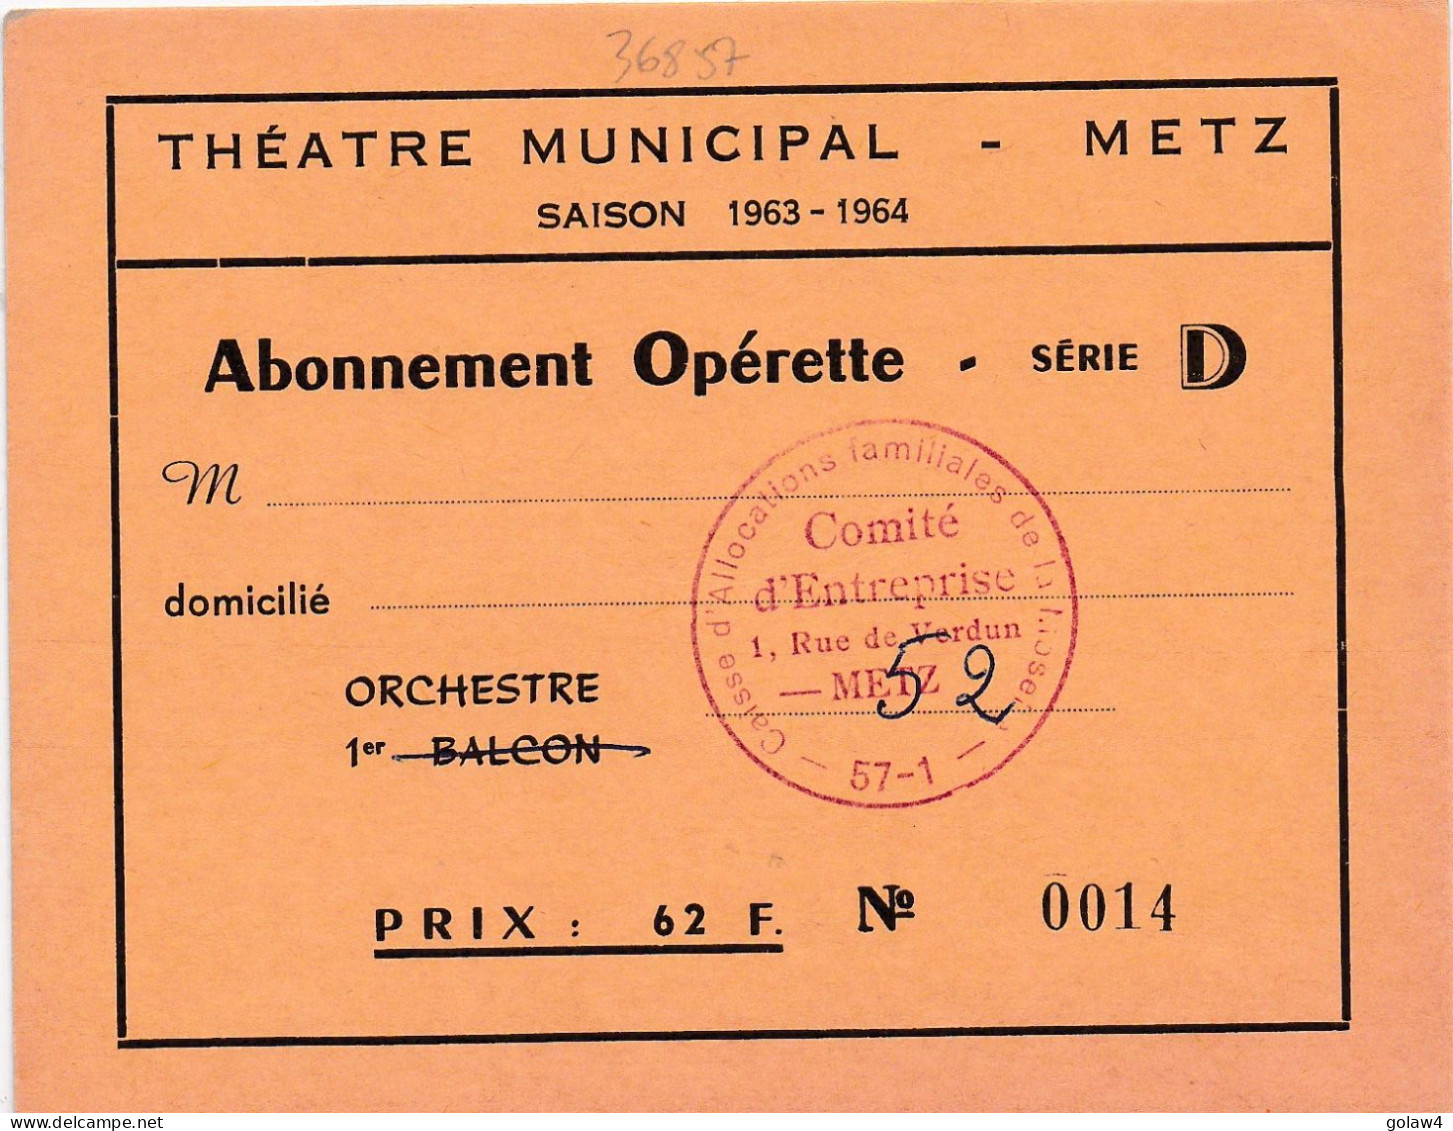 36857 THEATRE MUNICIPAL METZ SAISON 1963 1964 ABONNEMENT OPERETTE SERIE ORCHESTRE CAISSE ALLOCATIONS FAMILIALLES MOSELLE - Toegangskaarten